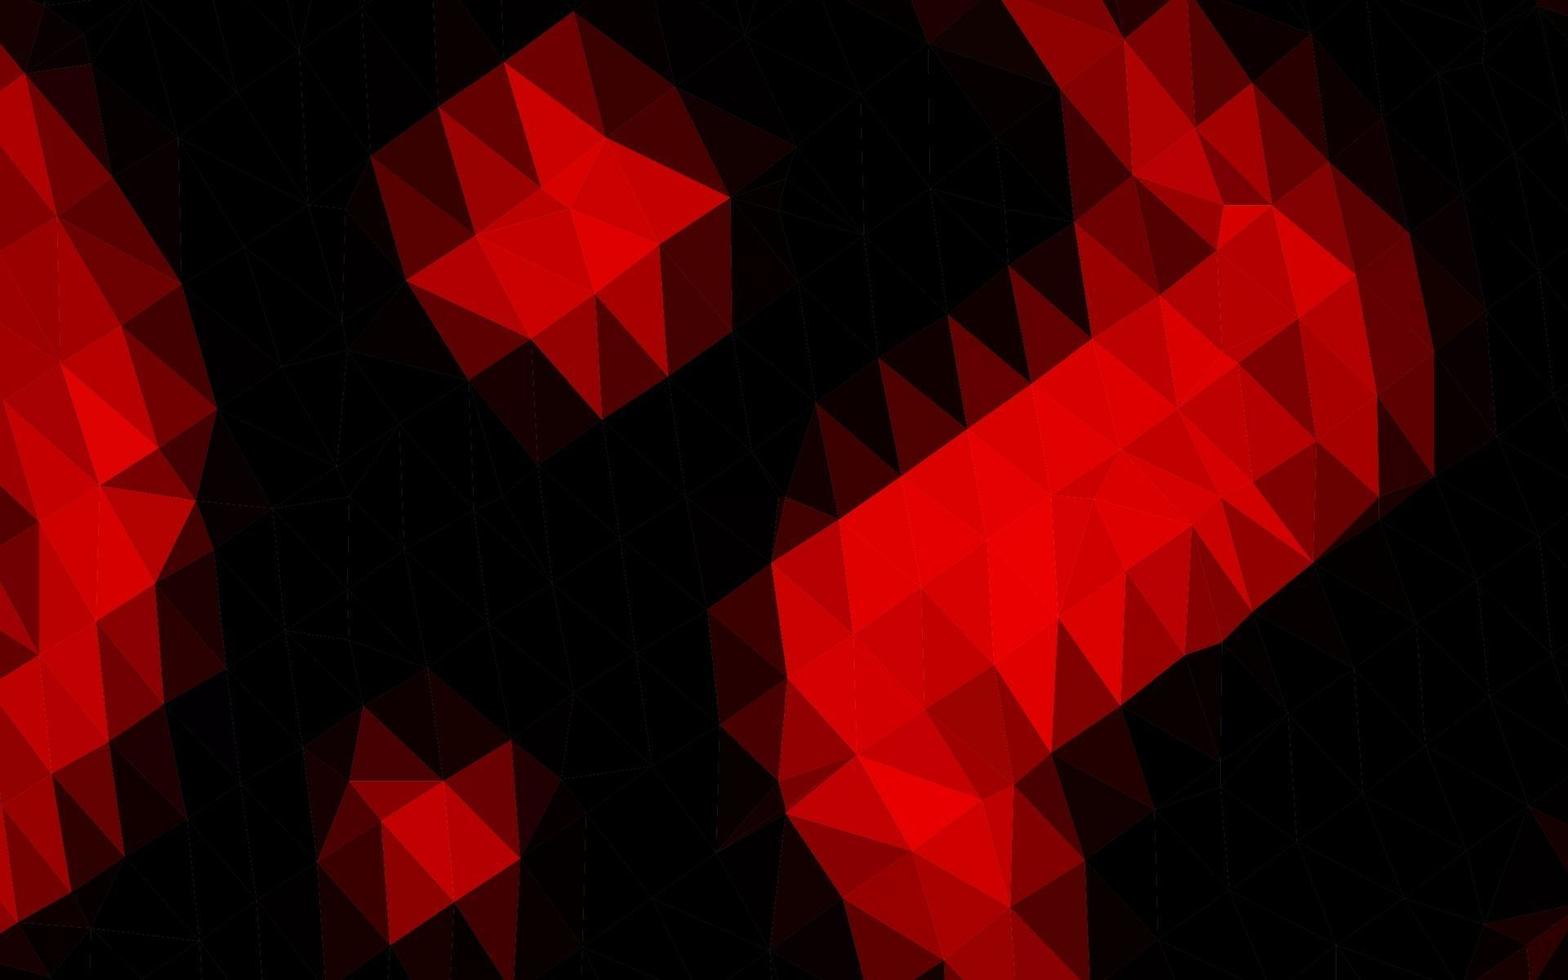 struttura poligonale astratta di vettore rosso chiaro.